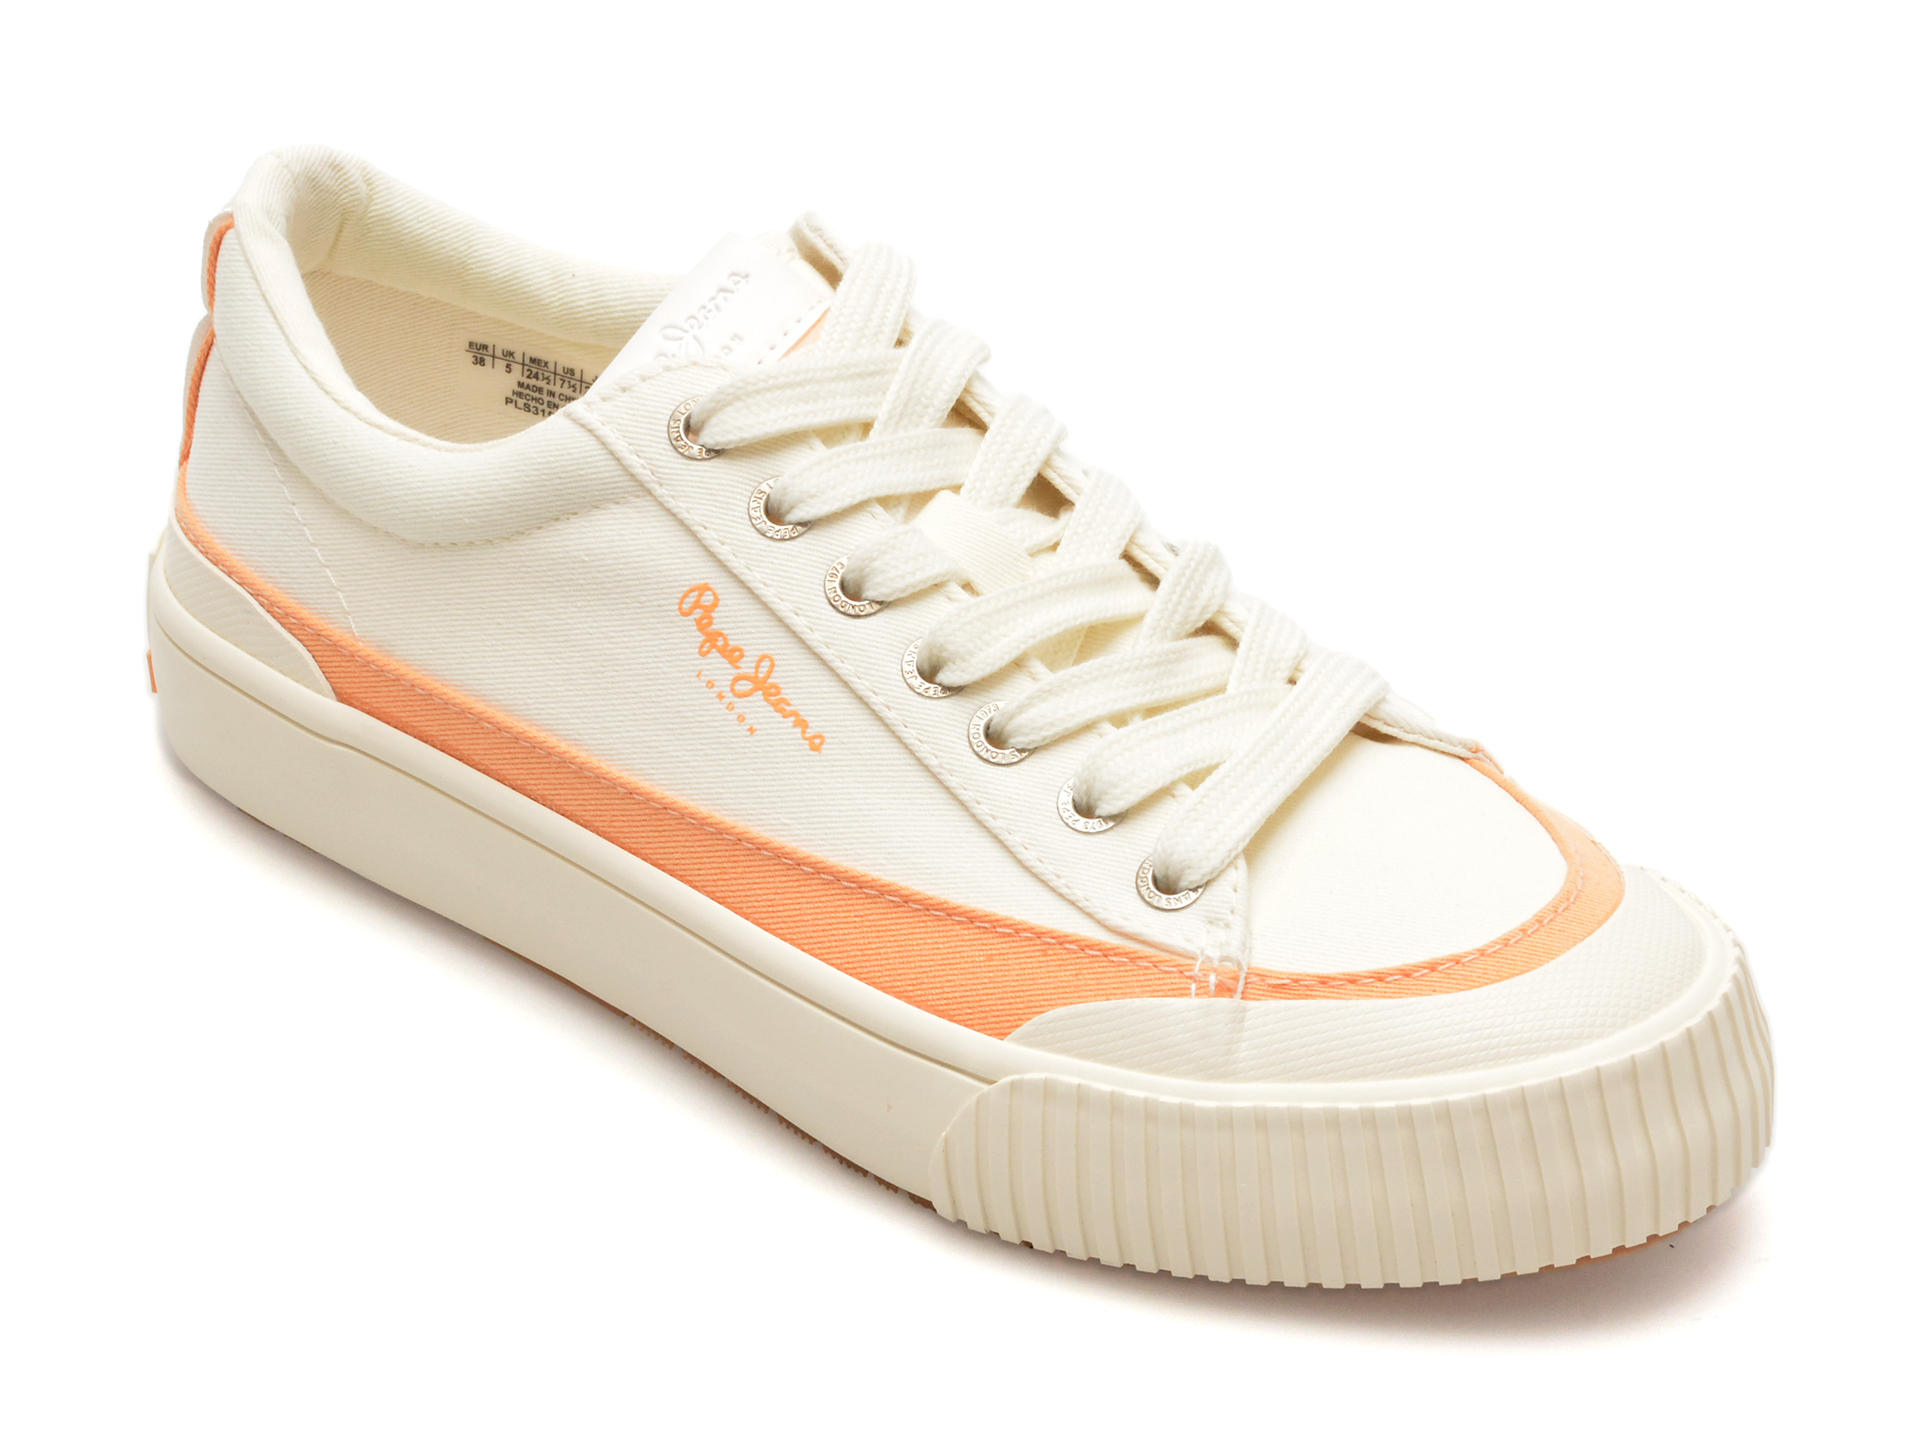 Pantofi Casual PEPE JEANS albi, LS31558, din material textil